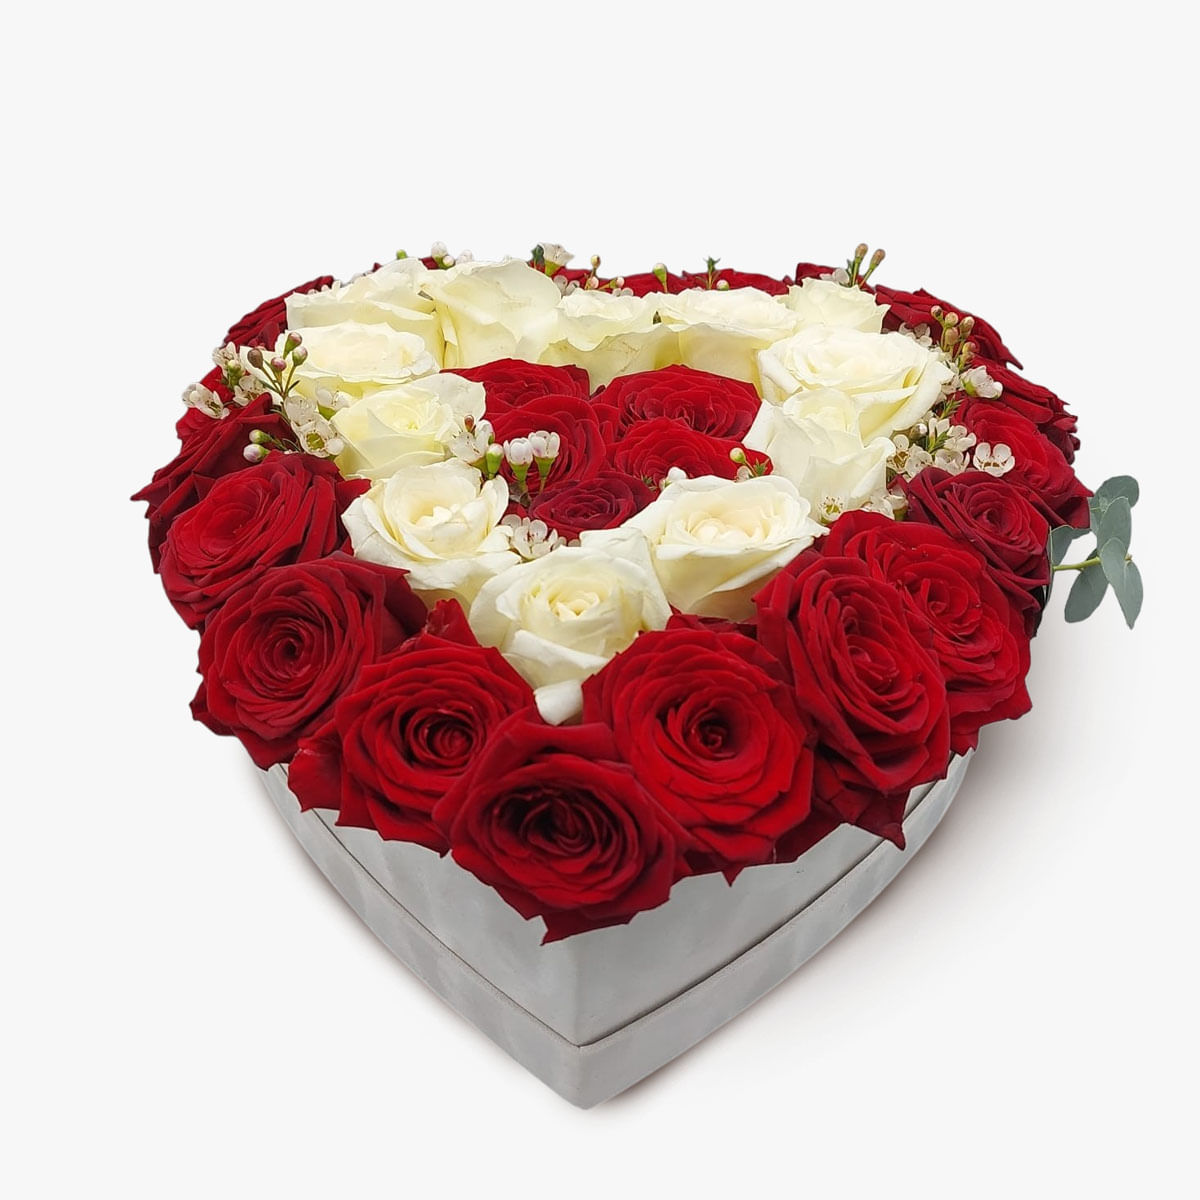 Aranjament in cutie inima cu 37 de trandafiri albi si rosii albi